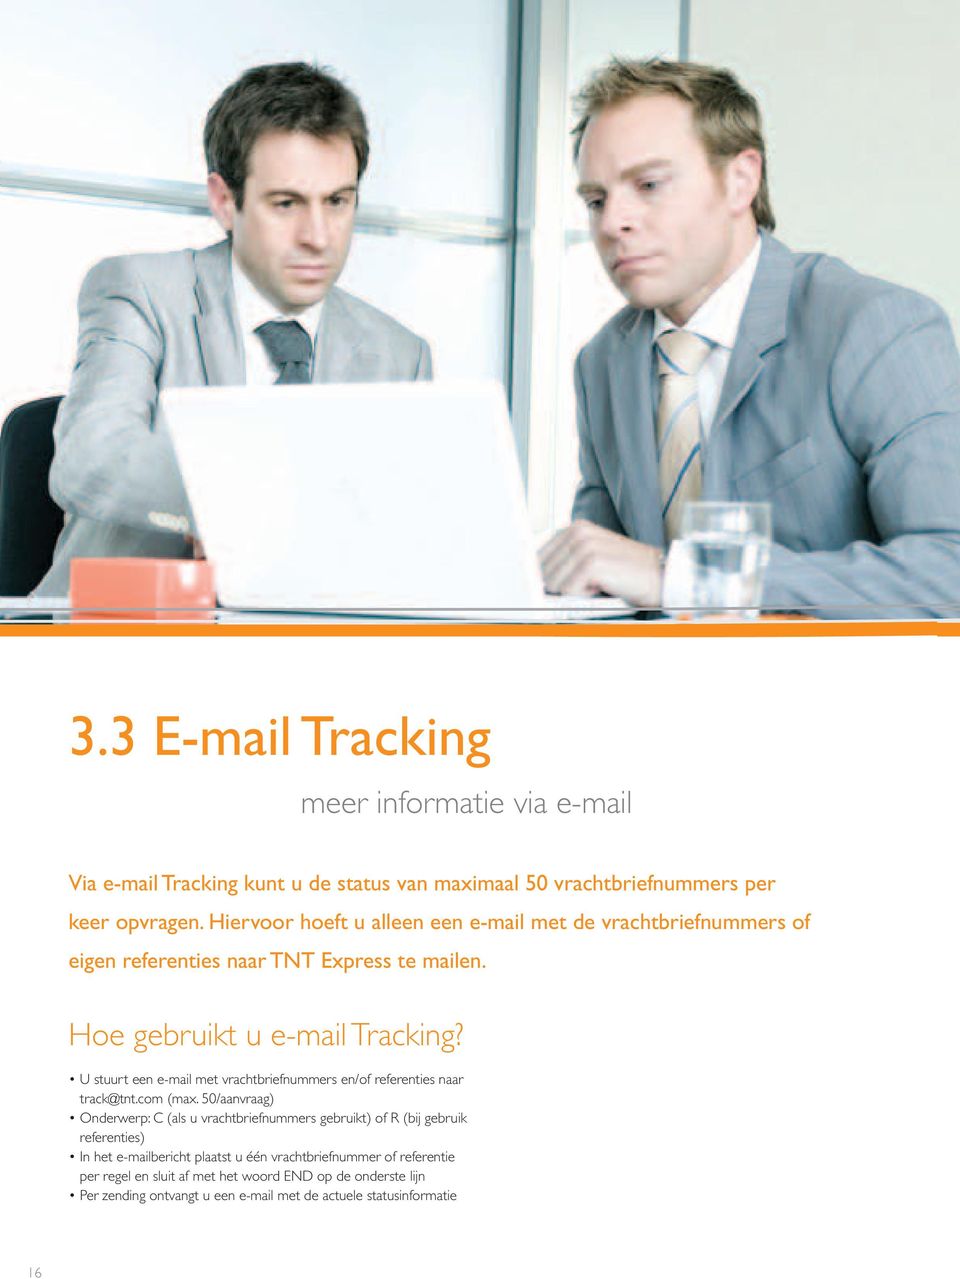 U stuurt een e-mail met vrachtbriefnummers en/of referenties naar track@tnt.com (max.